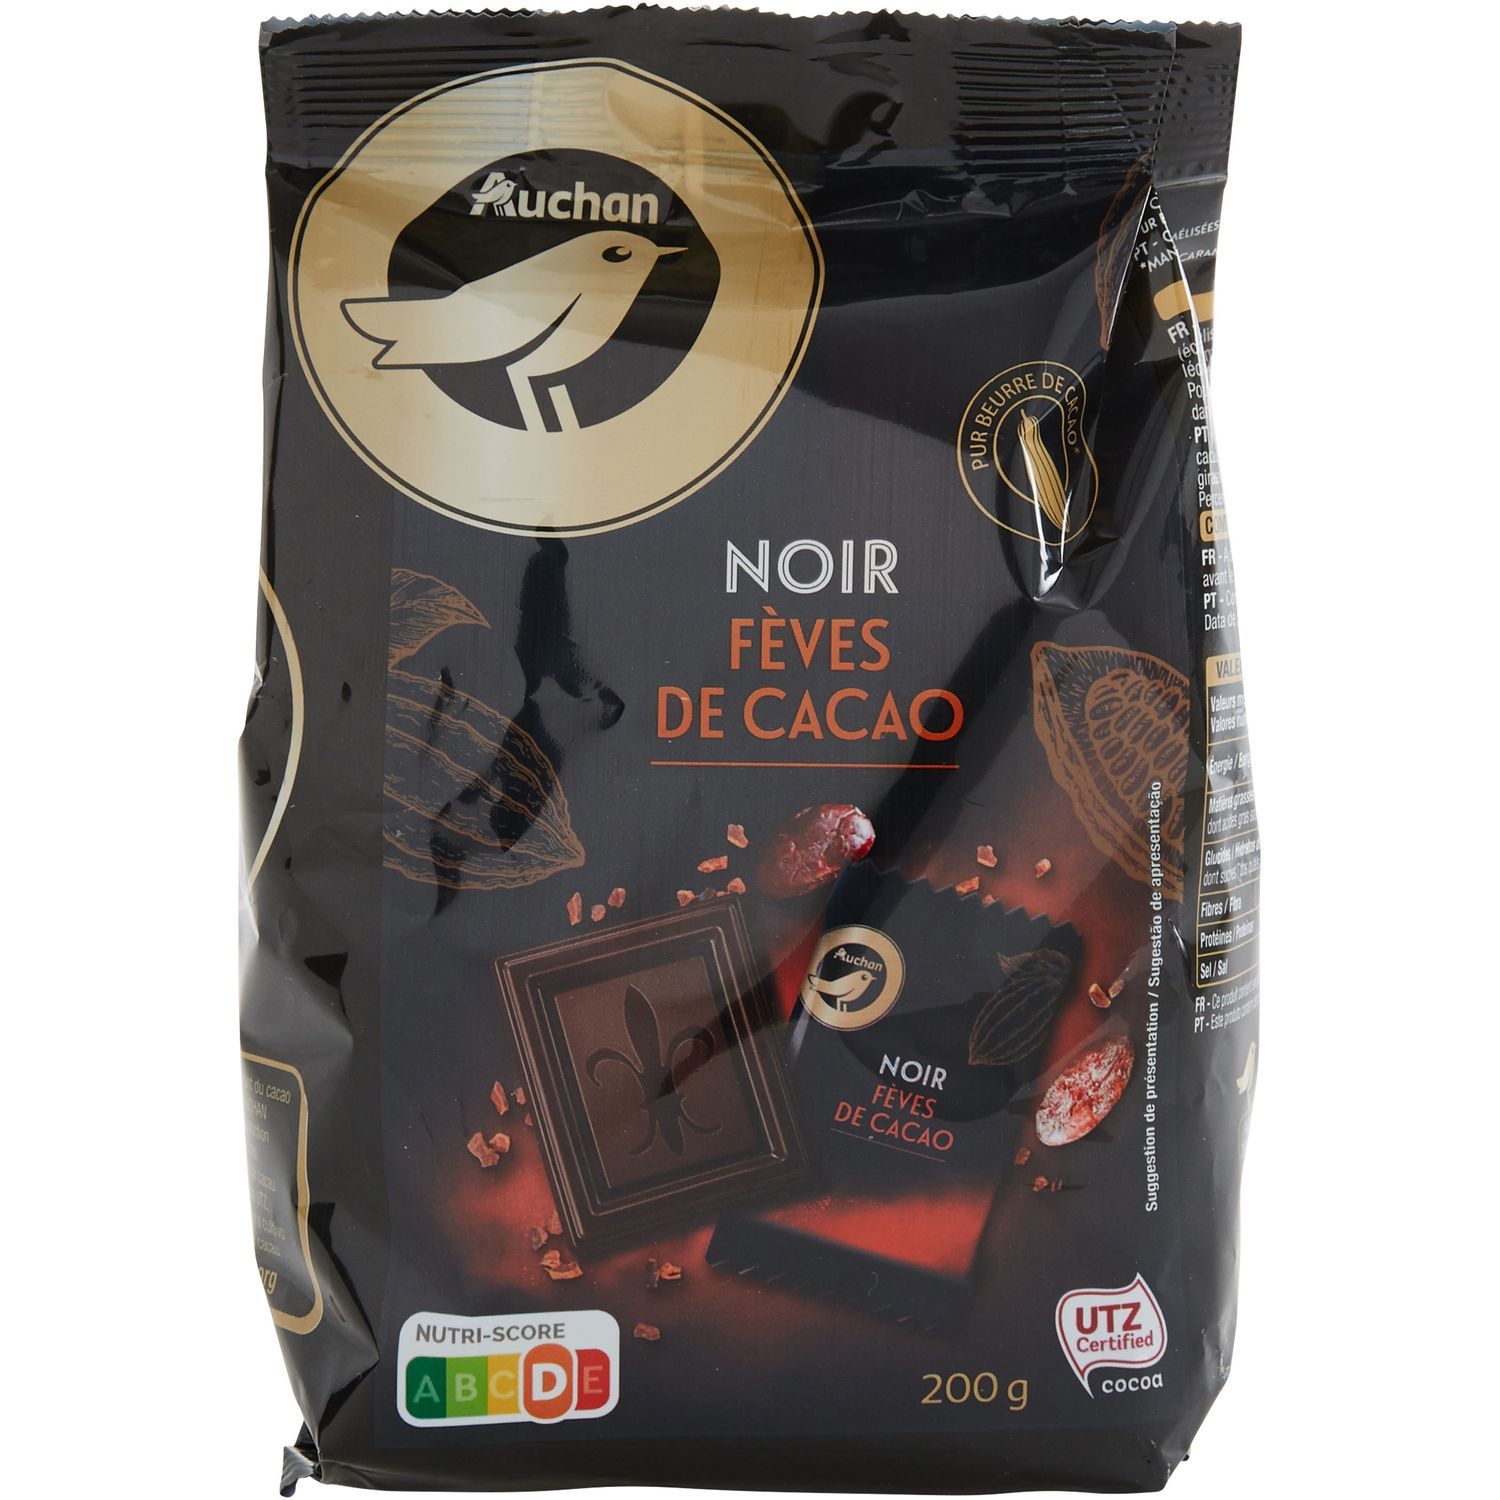 Mini-tablettes de chocolat noir